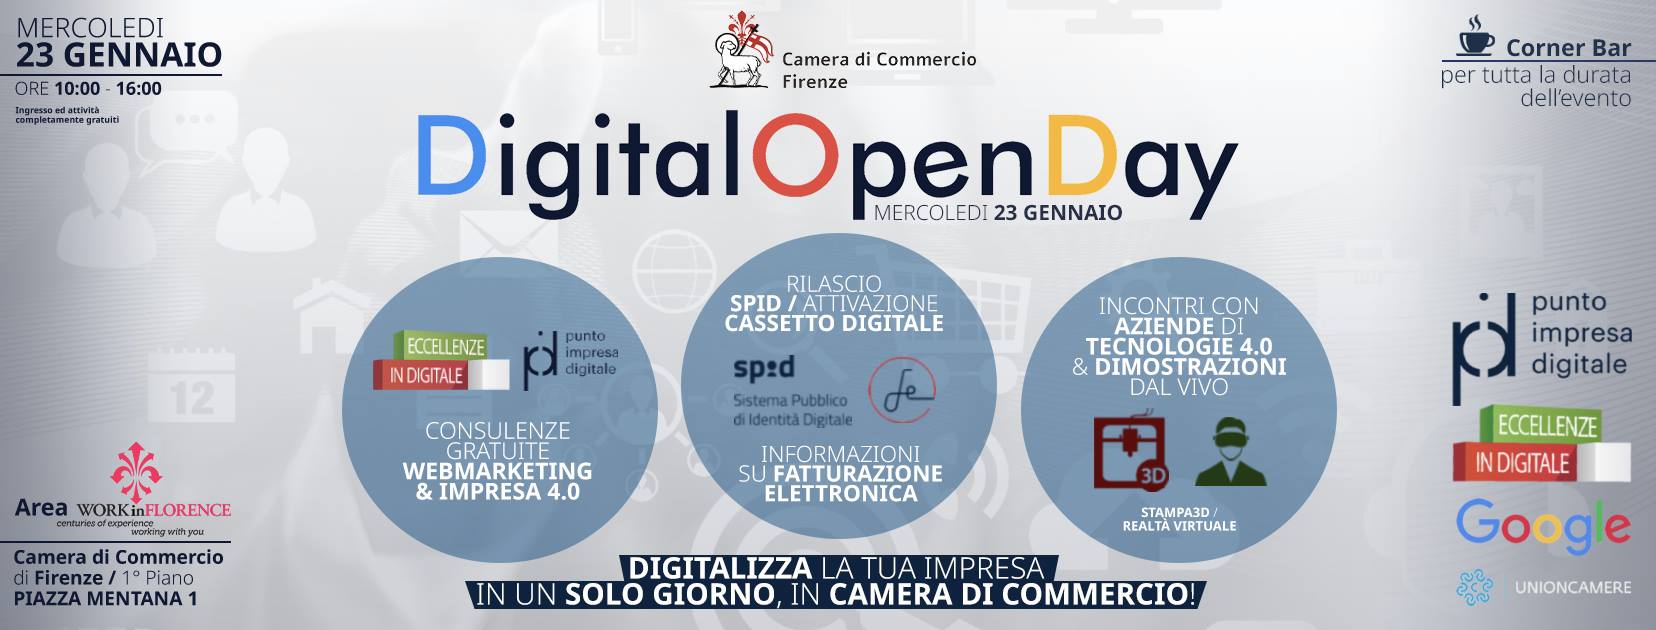 Digital Open Day